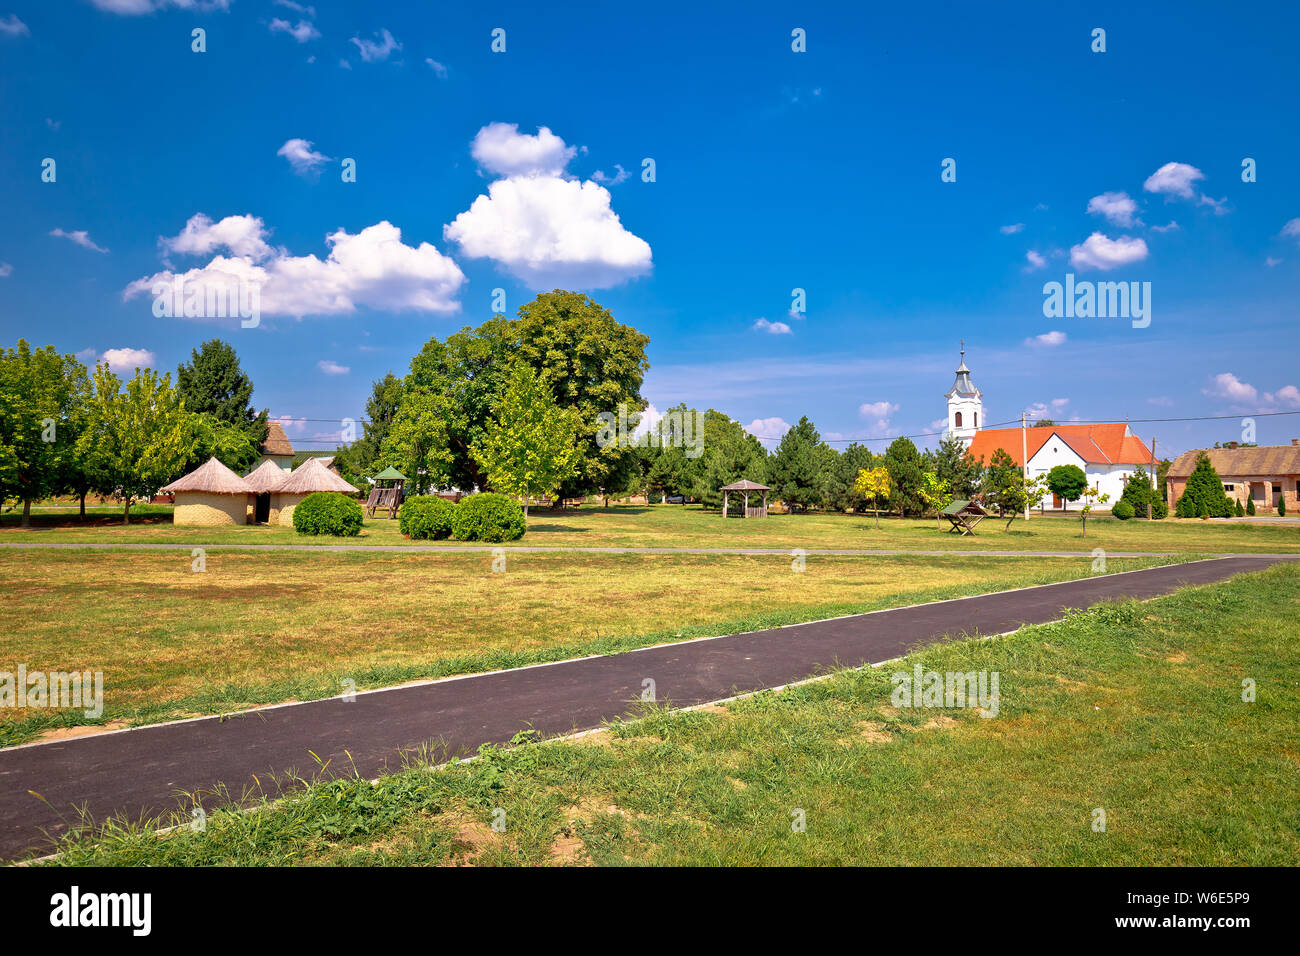 Street View di Karanac chiesa e architettura storica, etno villaggio in Baranja regione della Croazia Foto Stock